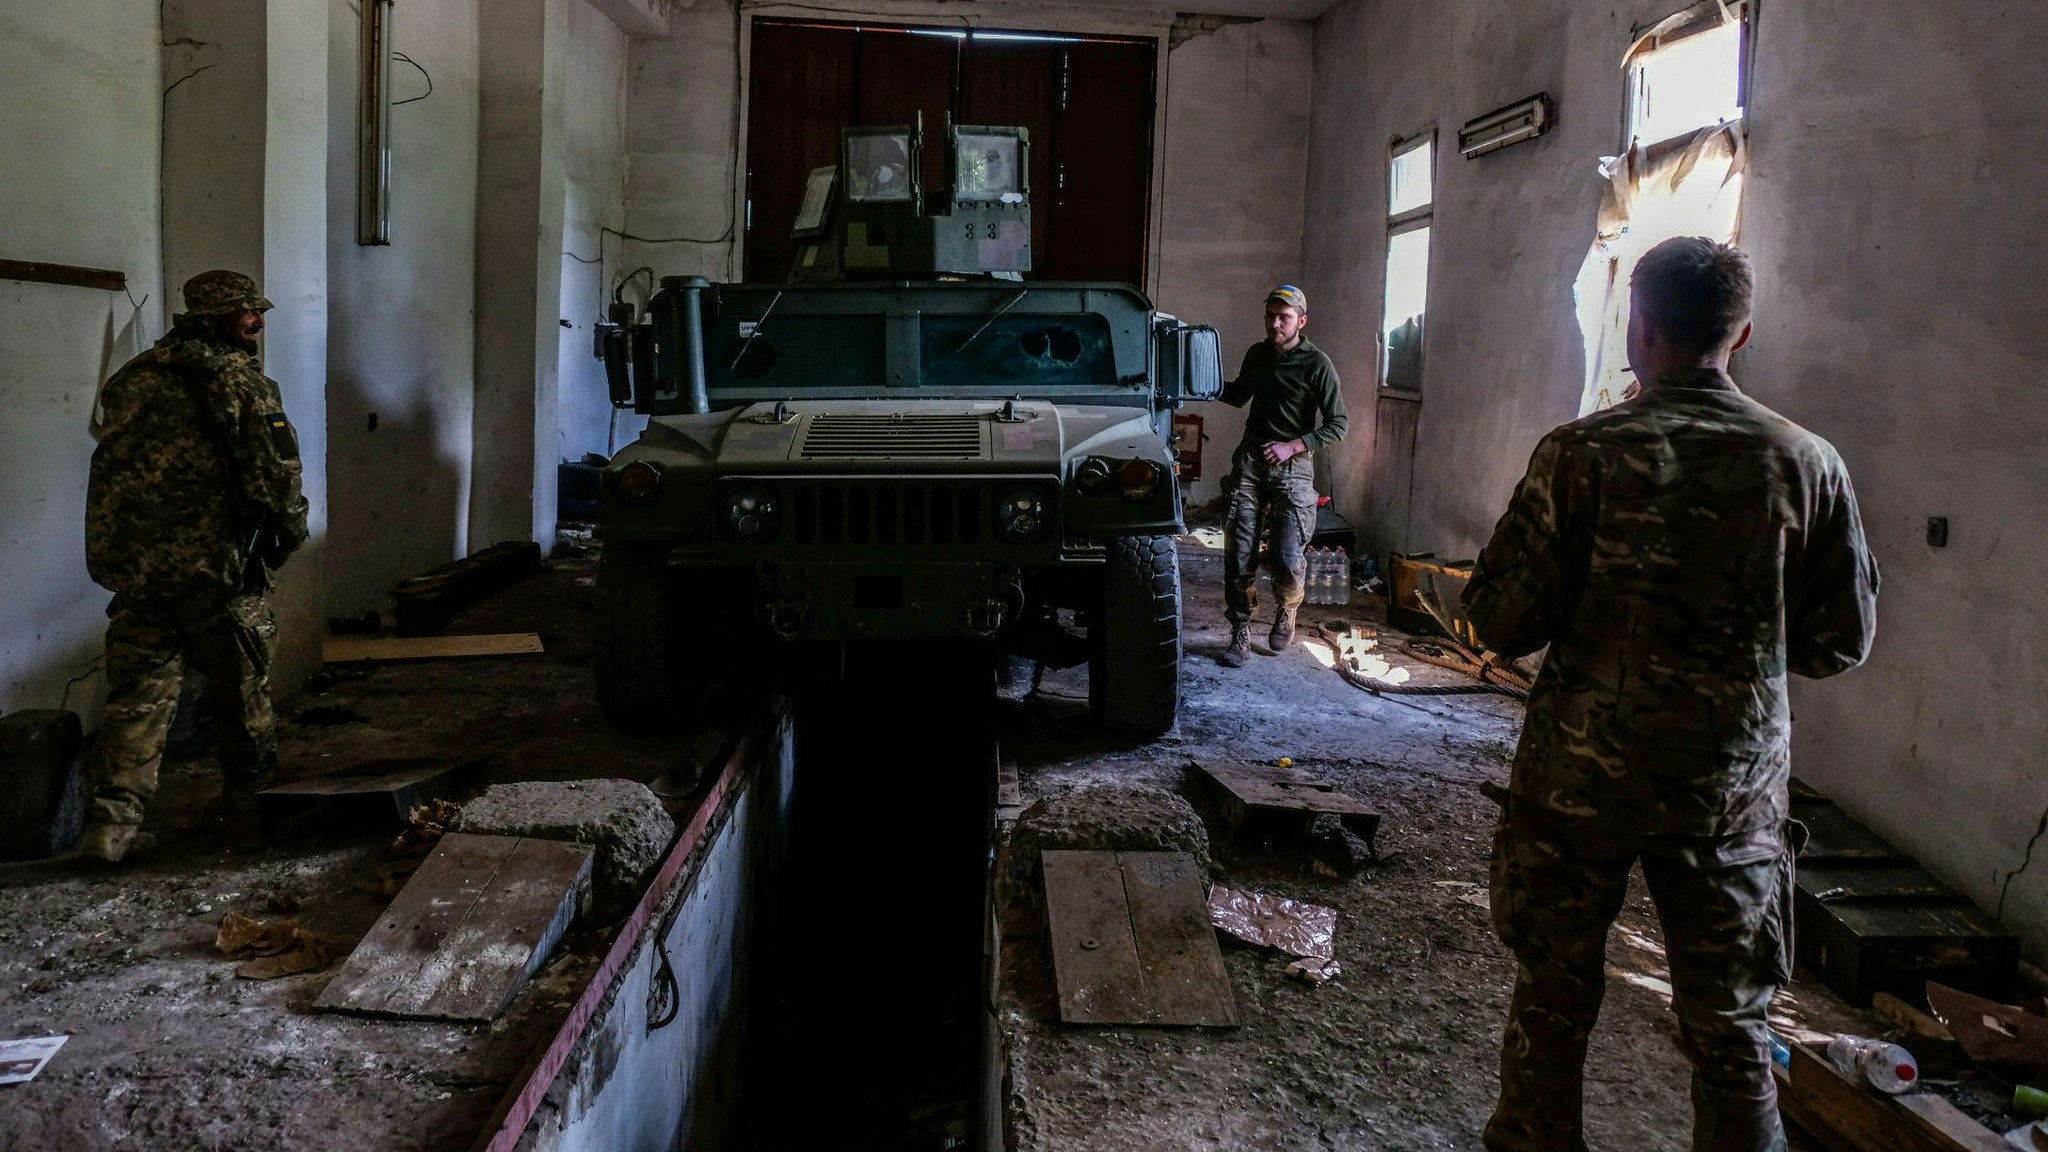 Die Kämpfe in der Ukraine gehen weiter, vor allem im Donbass ist die Lage sehr schwierig. Foto: Rick Mave / SOPA Images via ZUMA Press Wire / dpa